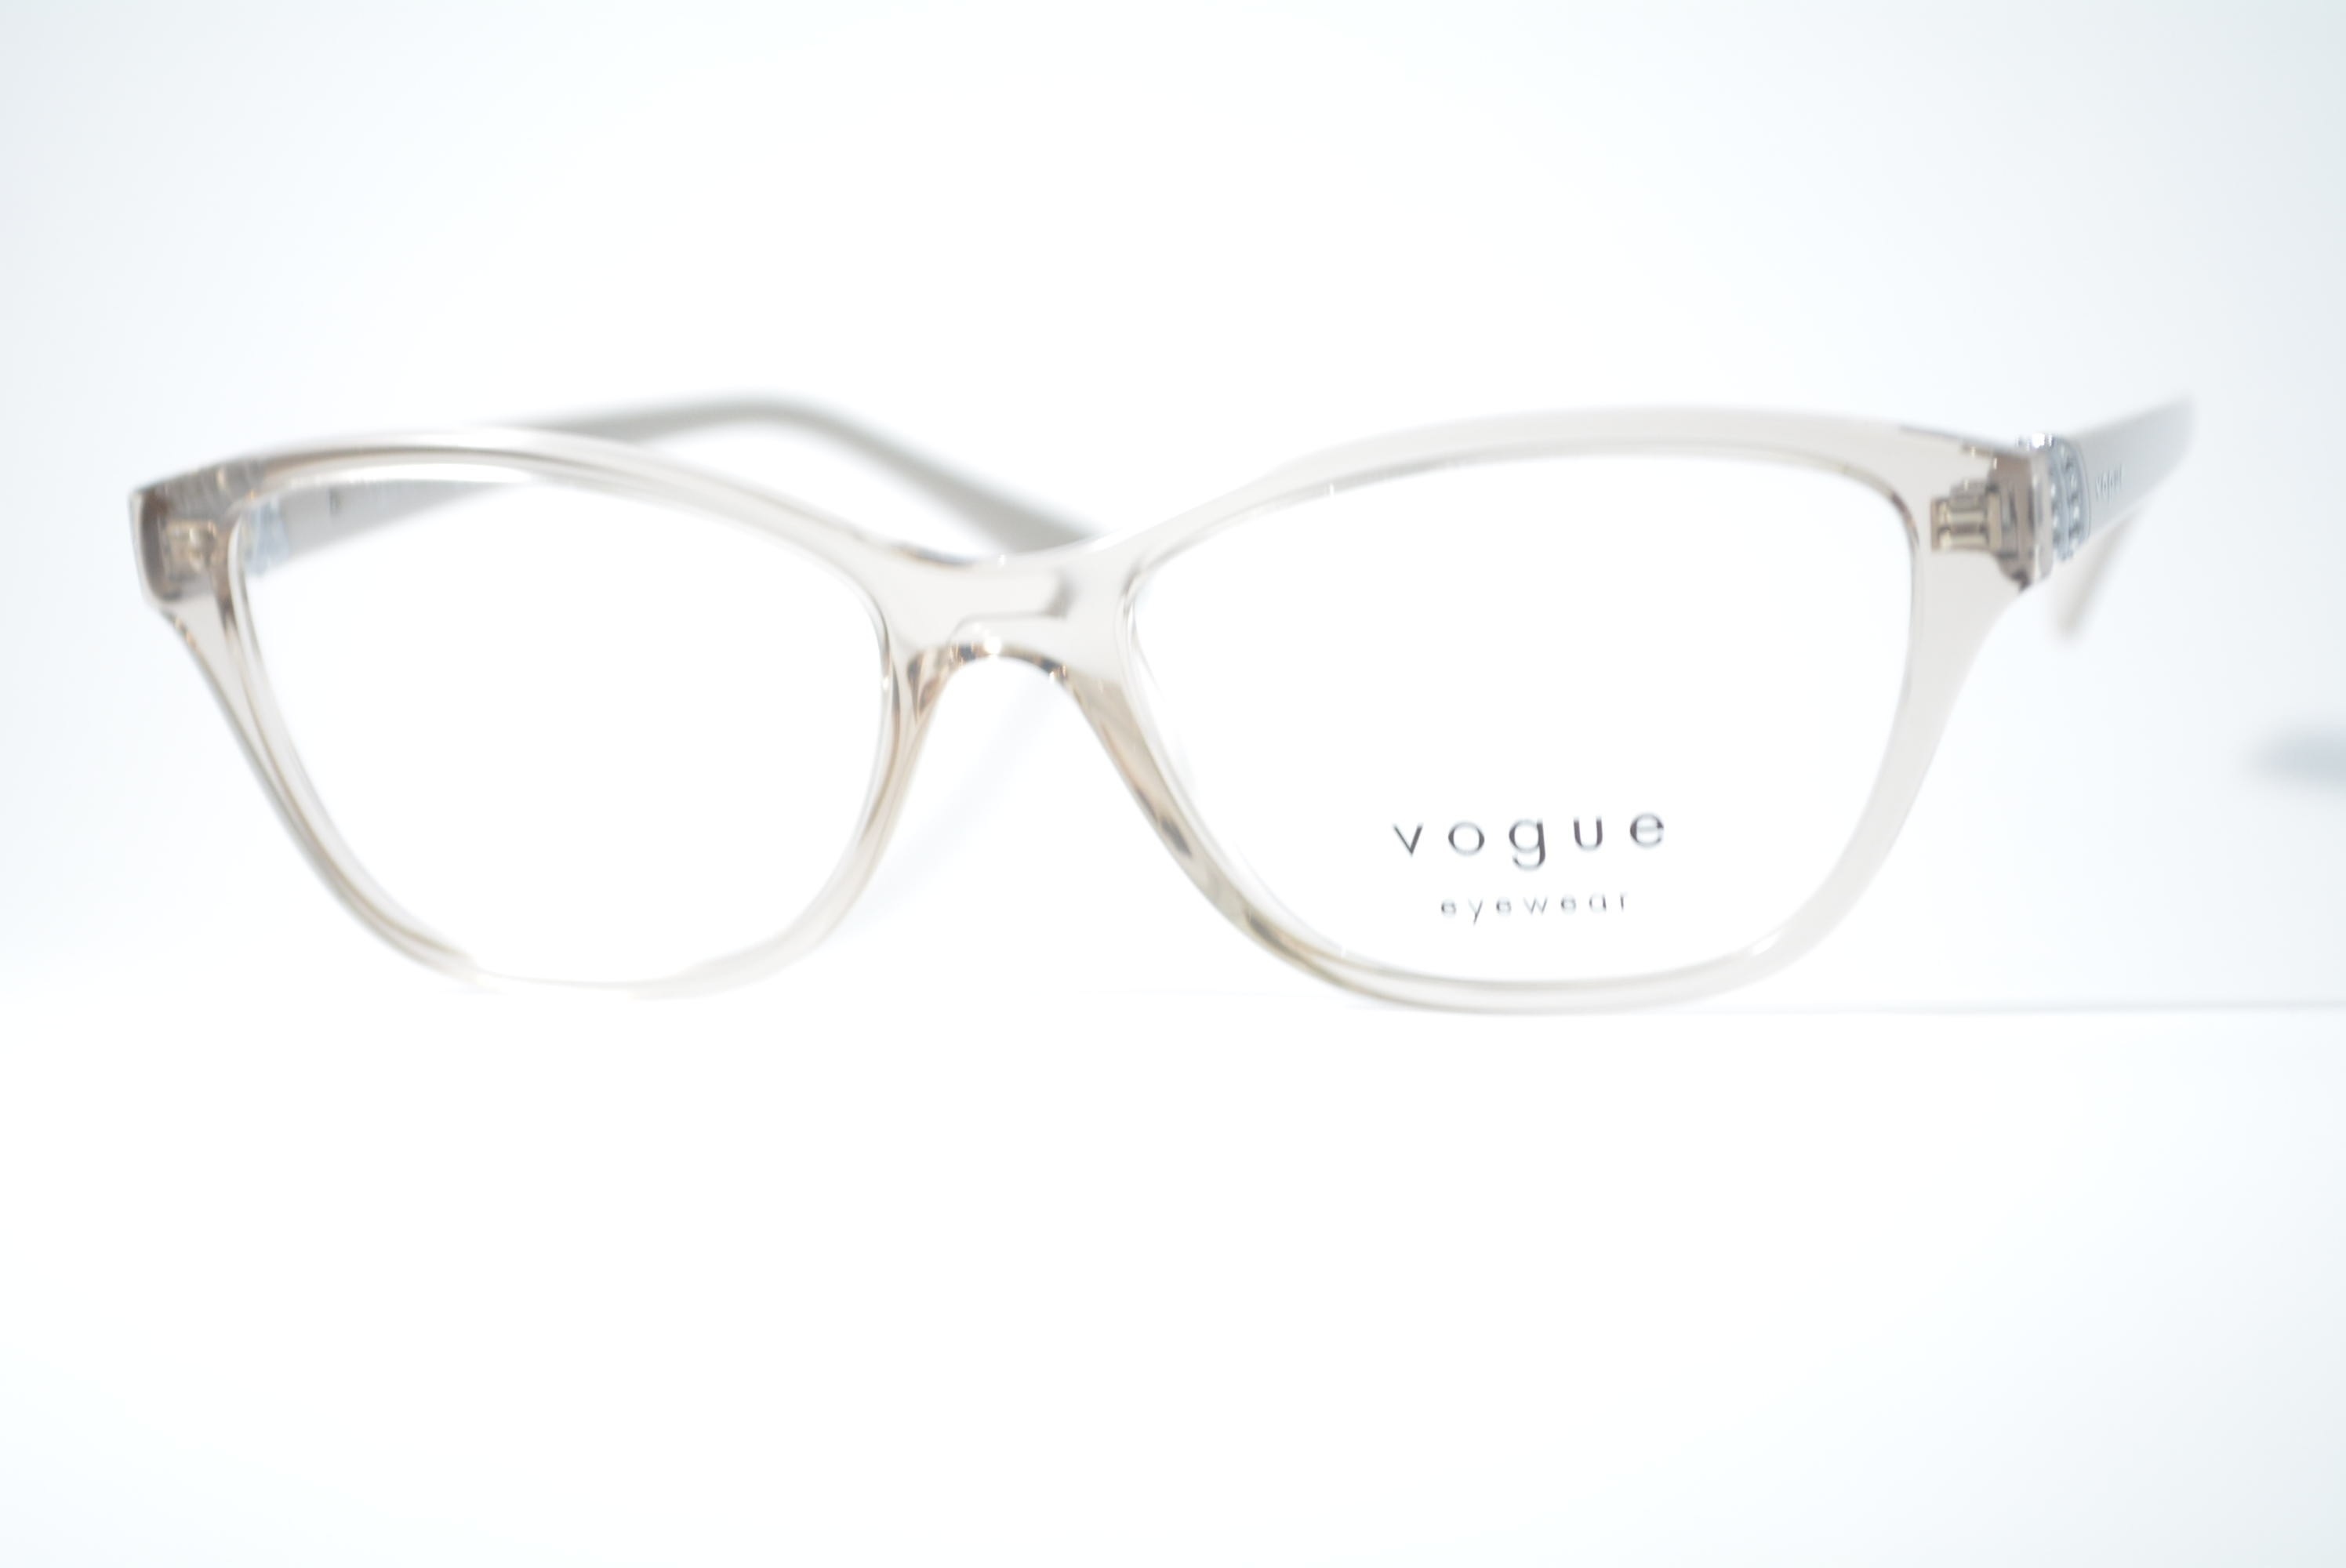 armação de óculos Vogue mod vo5516b 2990